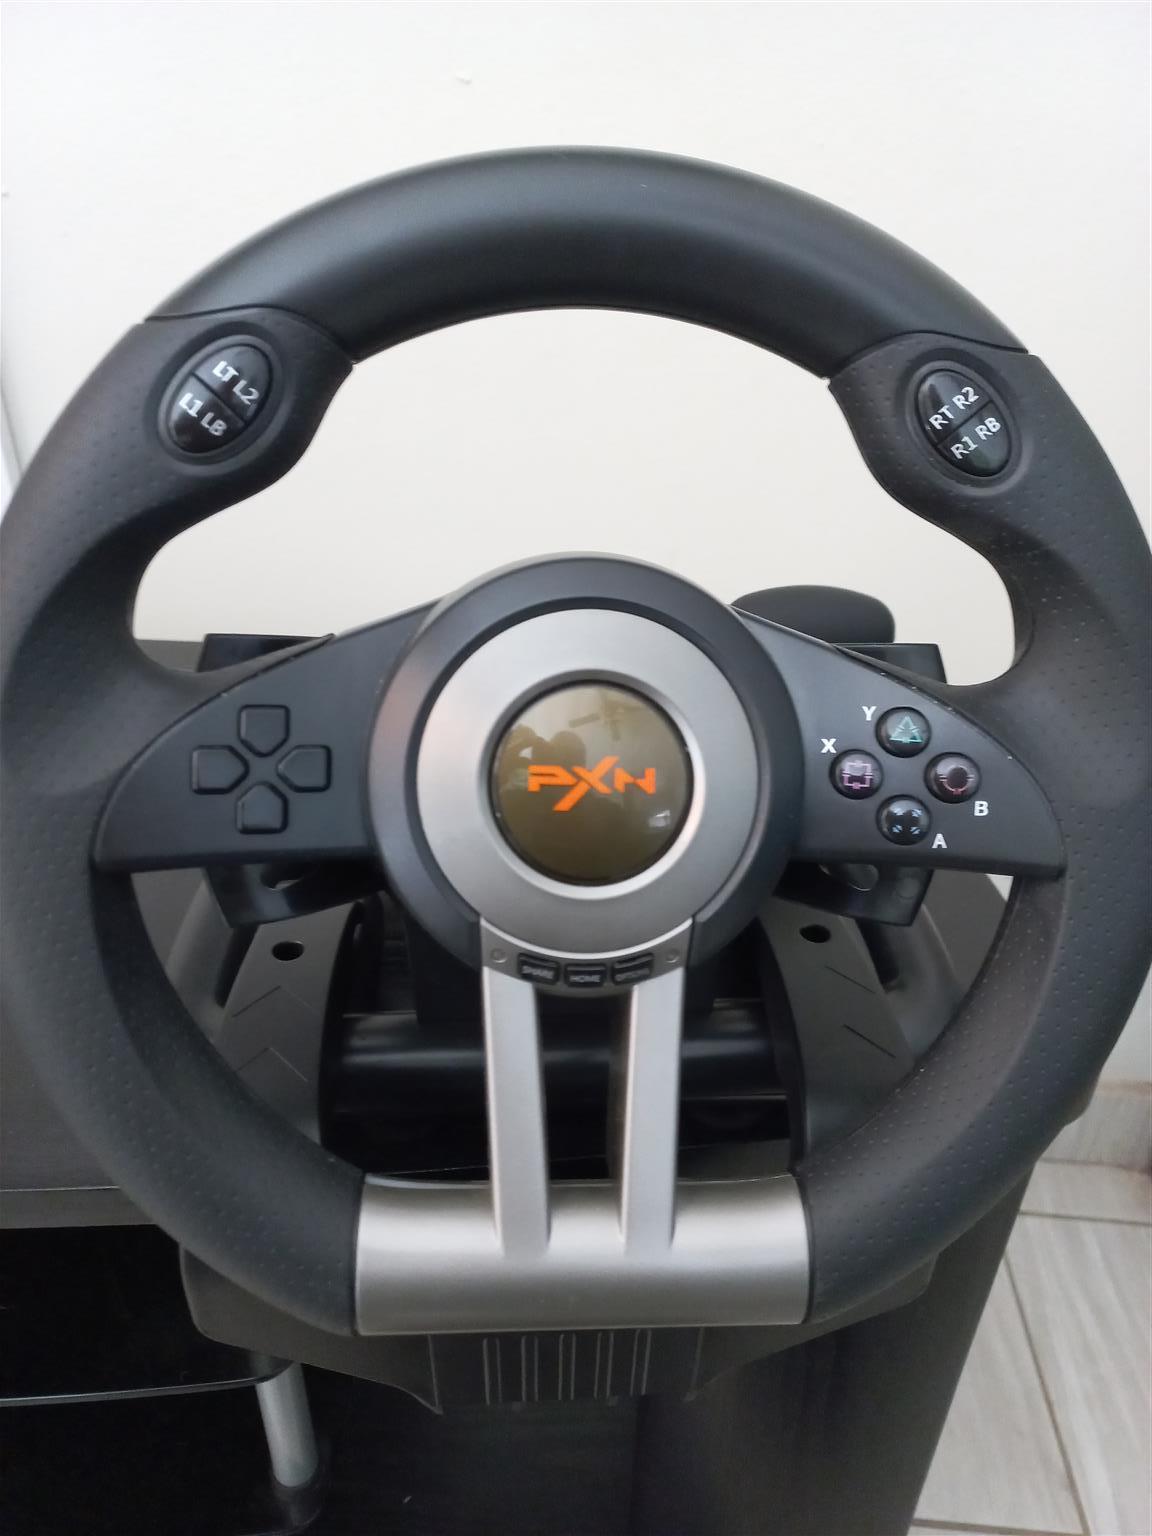 PXN PRO V3 Gaming driving wheel & padels